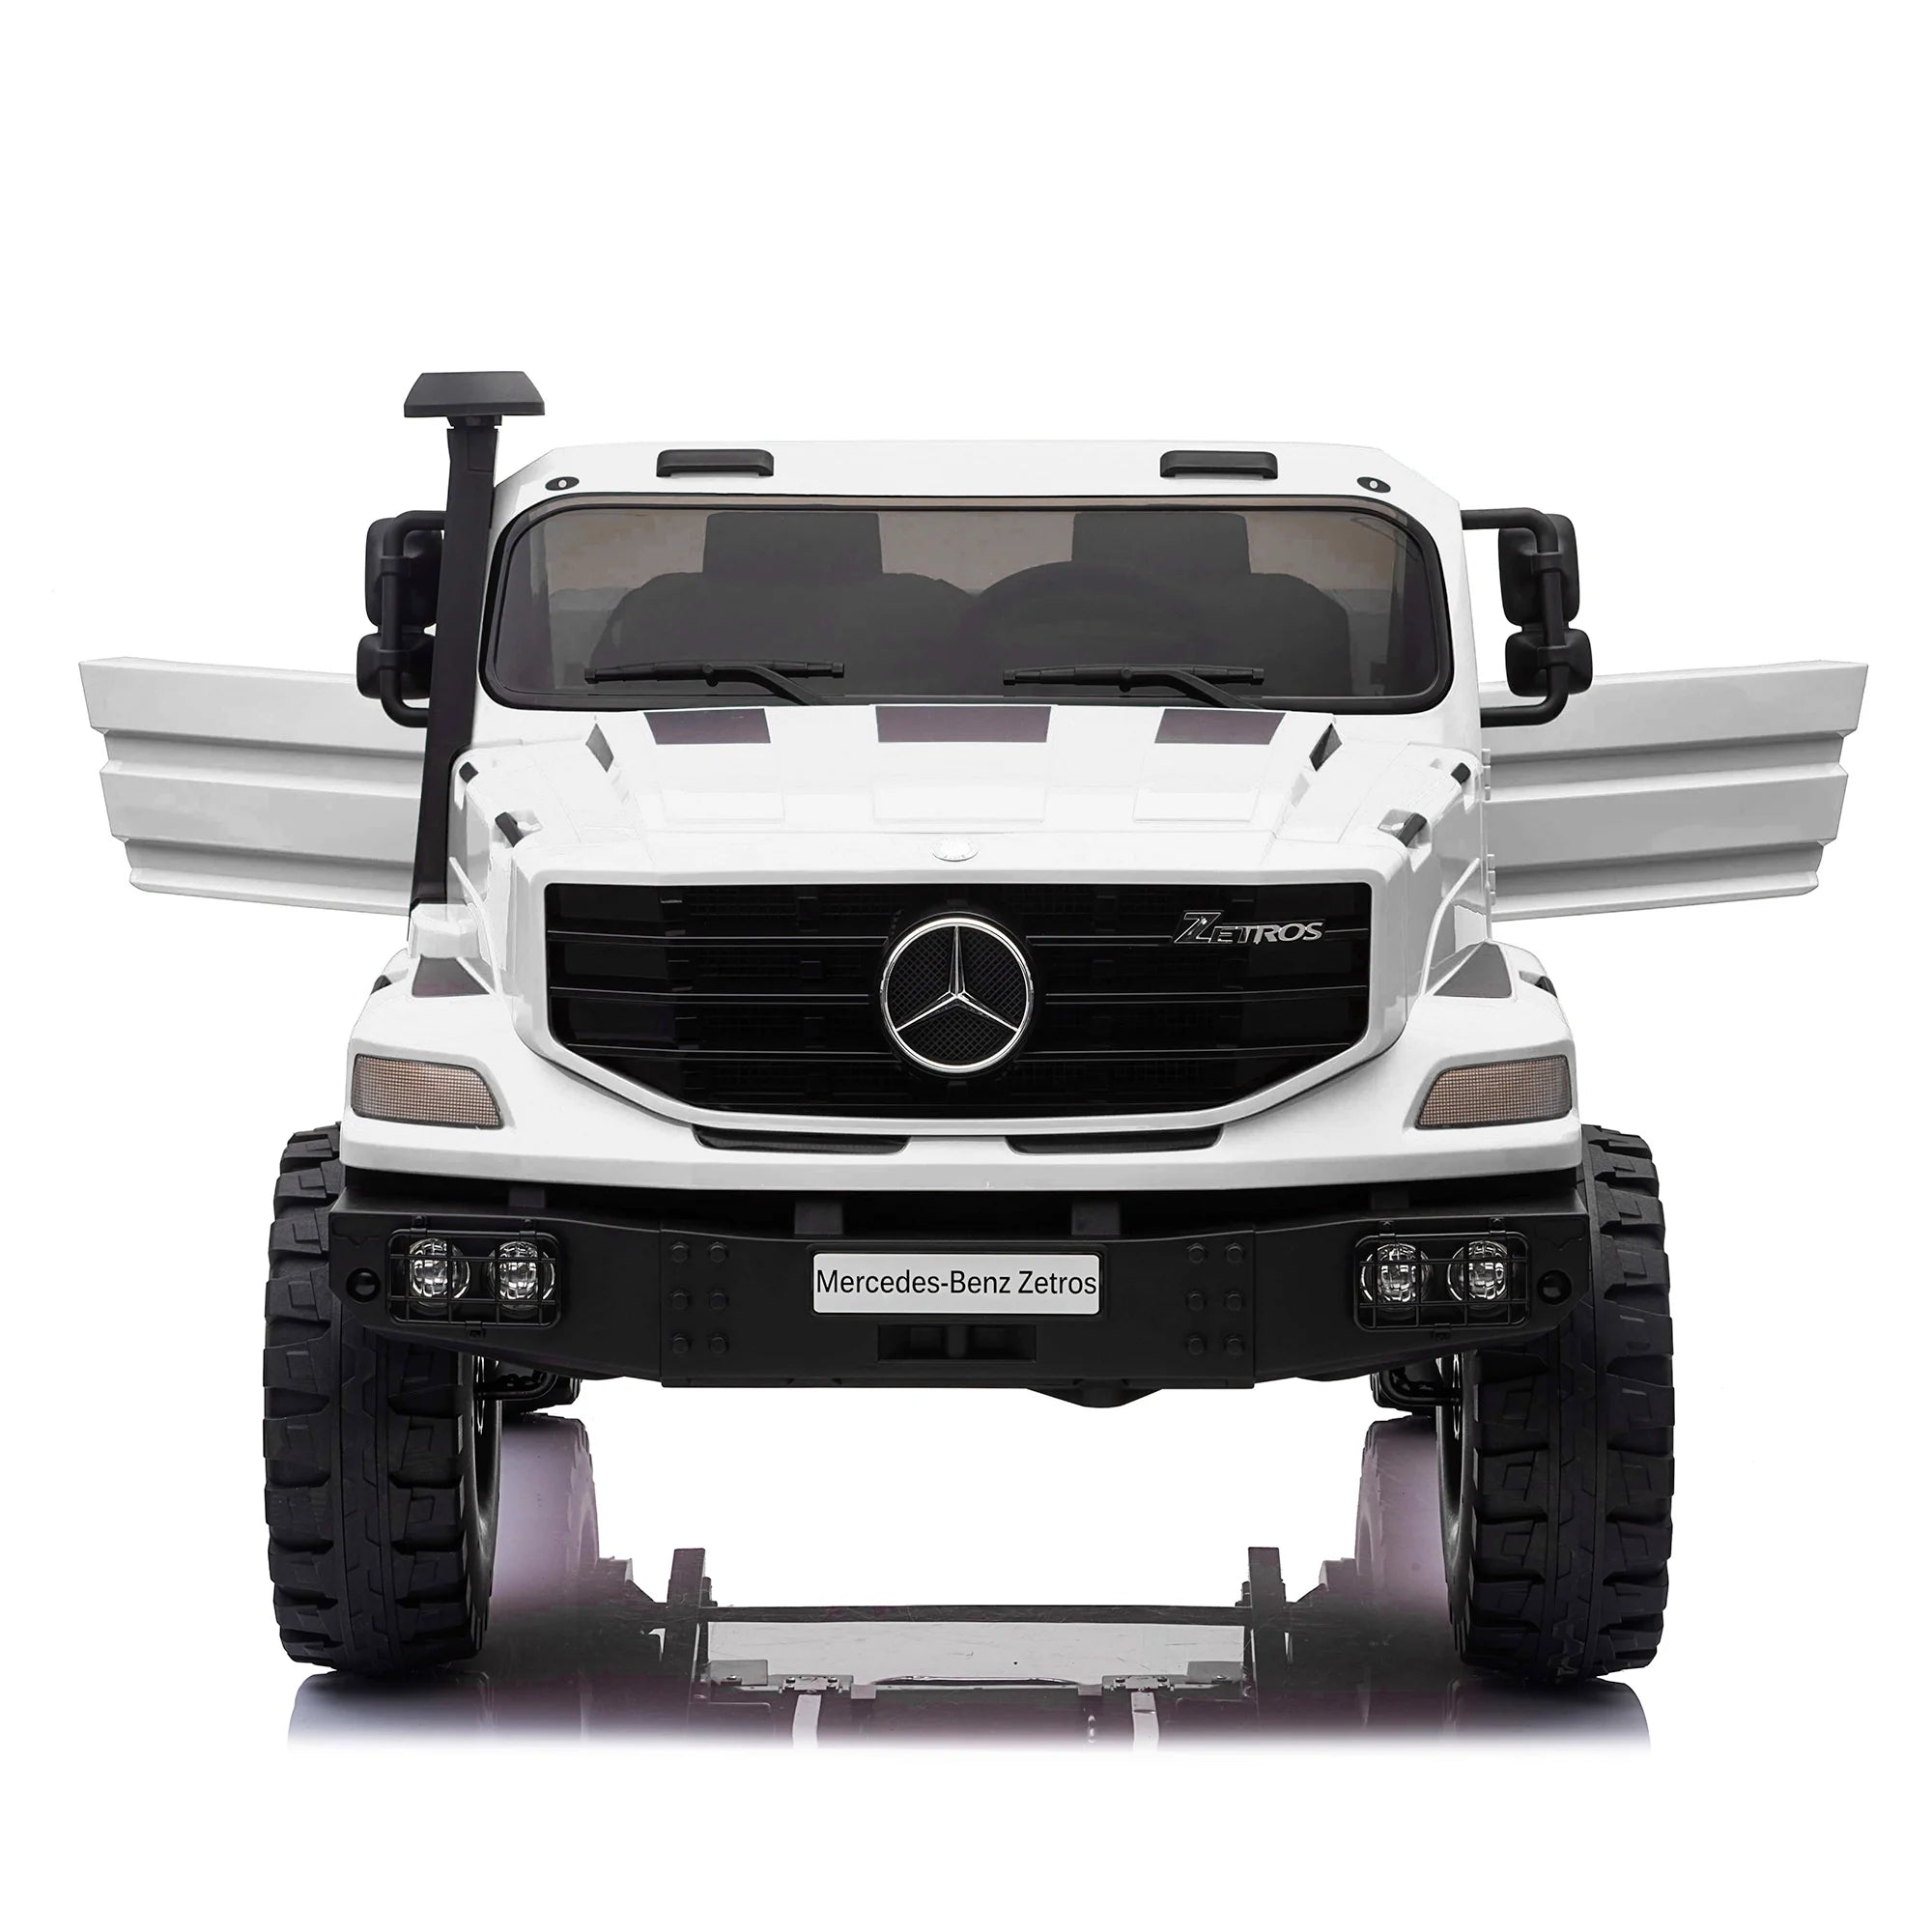 24V Mercedes Zetros Ride-On Car, Parental Remote, Leather Seats, MP3, LED Lights